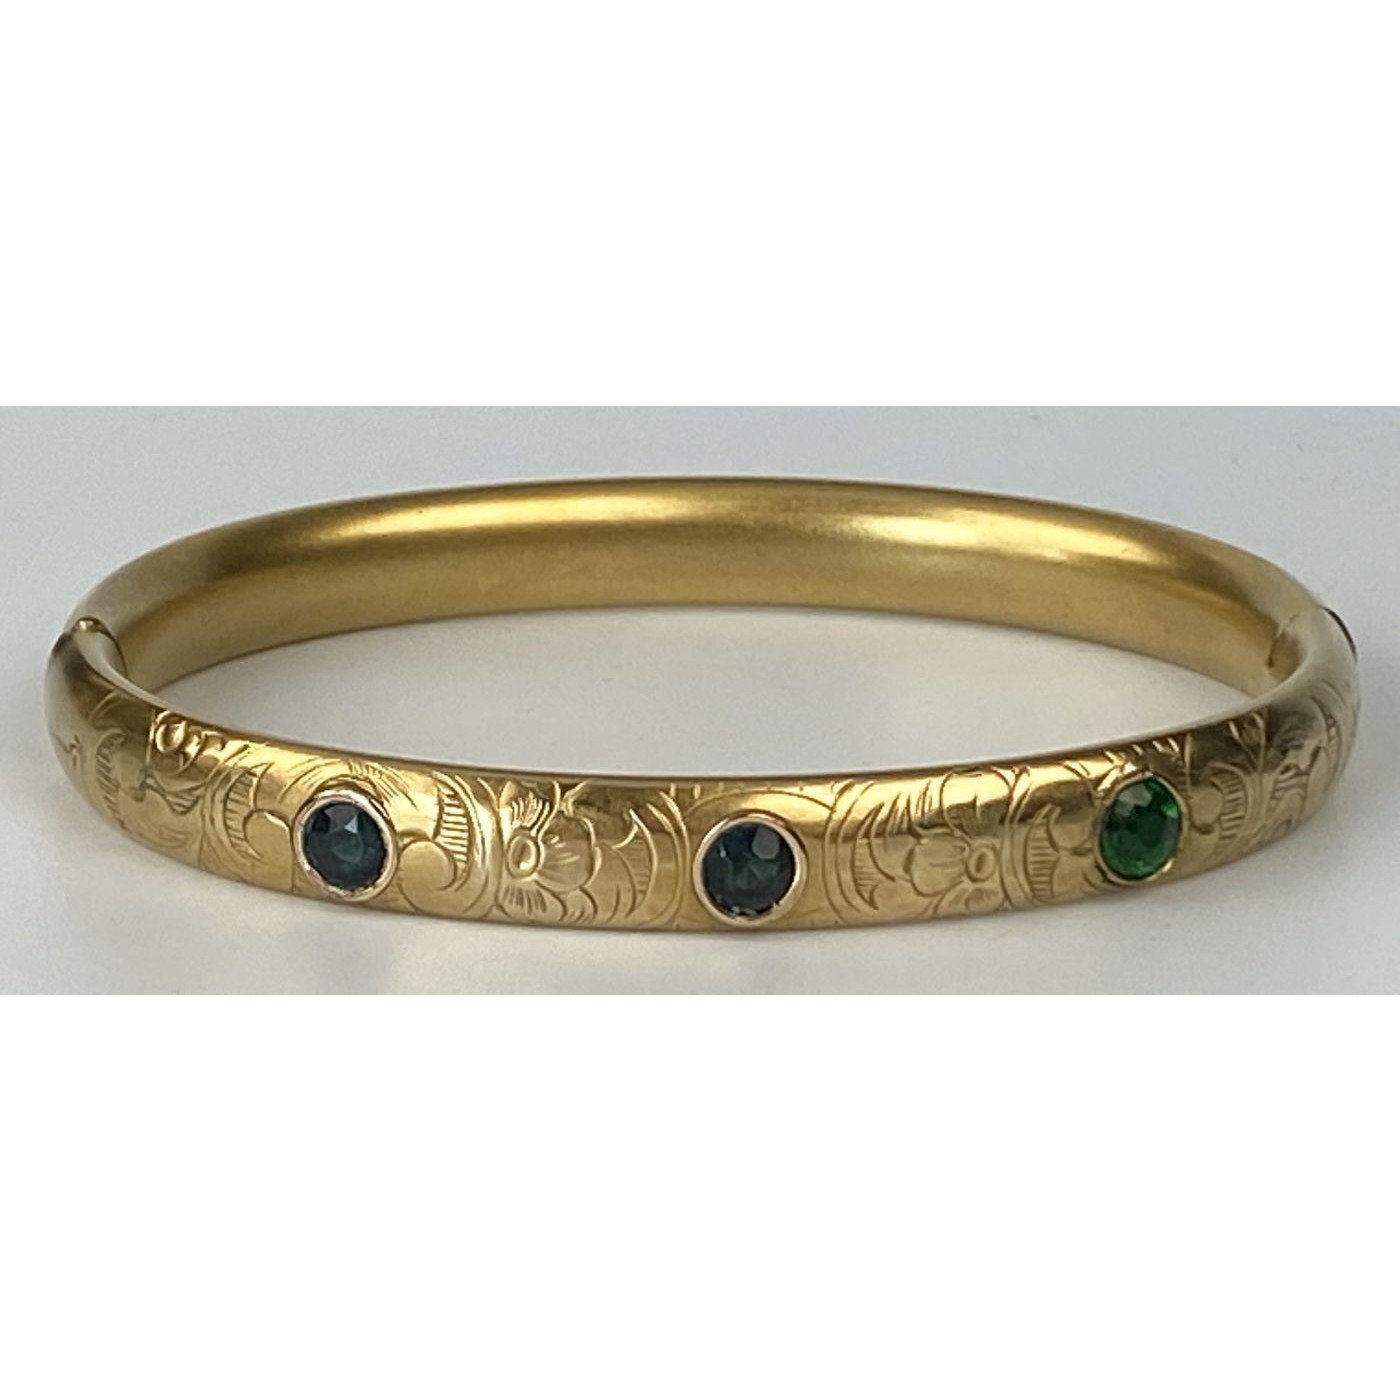 Lovely Emerald Green Stones Engagement Bangle Bracelet